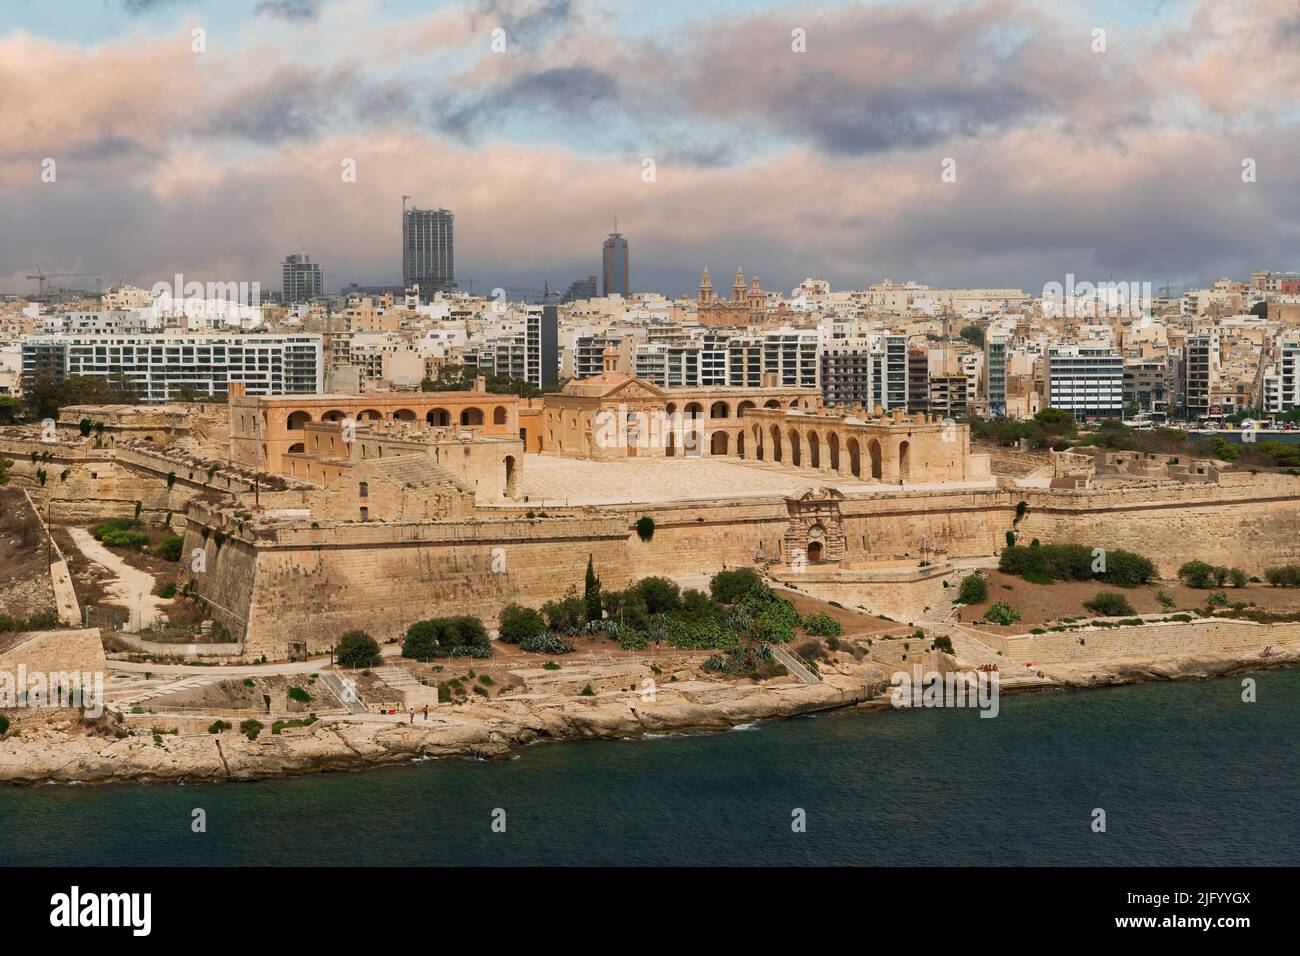 La arquitectura barroca del siglo 18th de Fort Manoel por el mar, la fortificación del bastión de estrellas al noroeste de la capital maltesa, Valletta, Malta, Mediterráneo Foto de stock